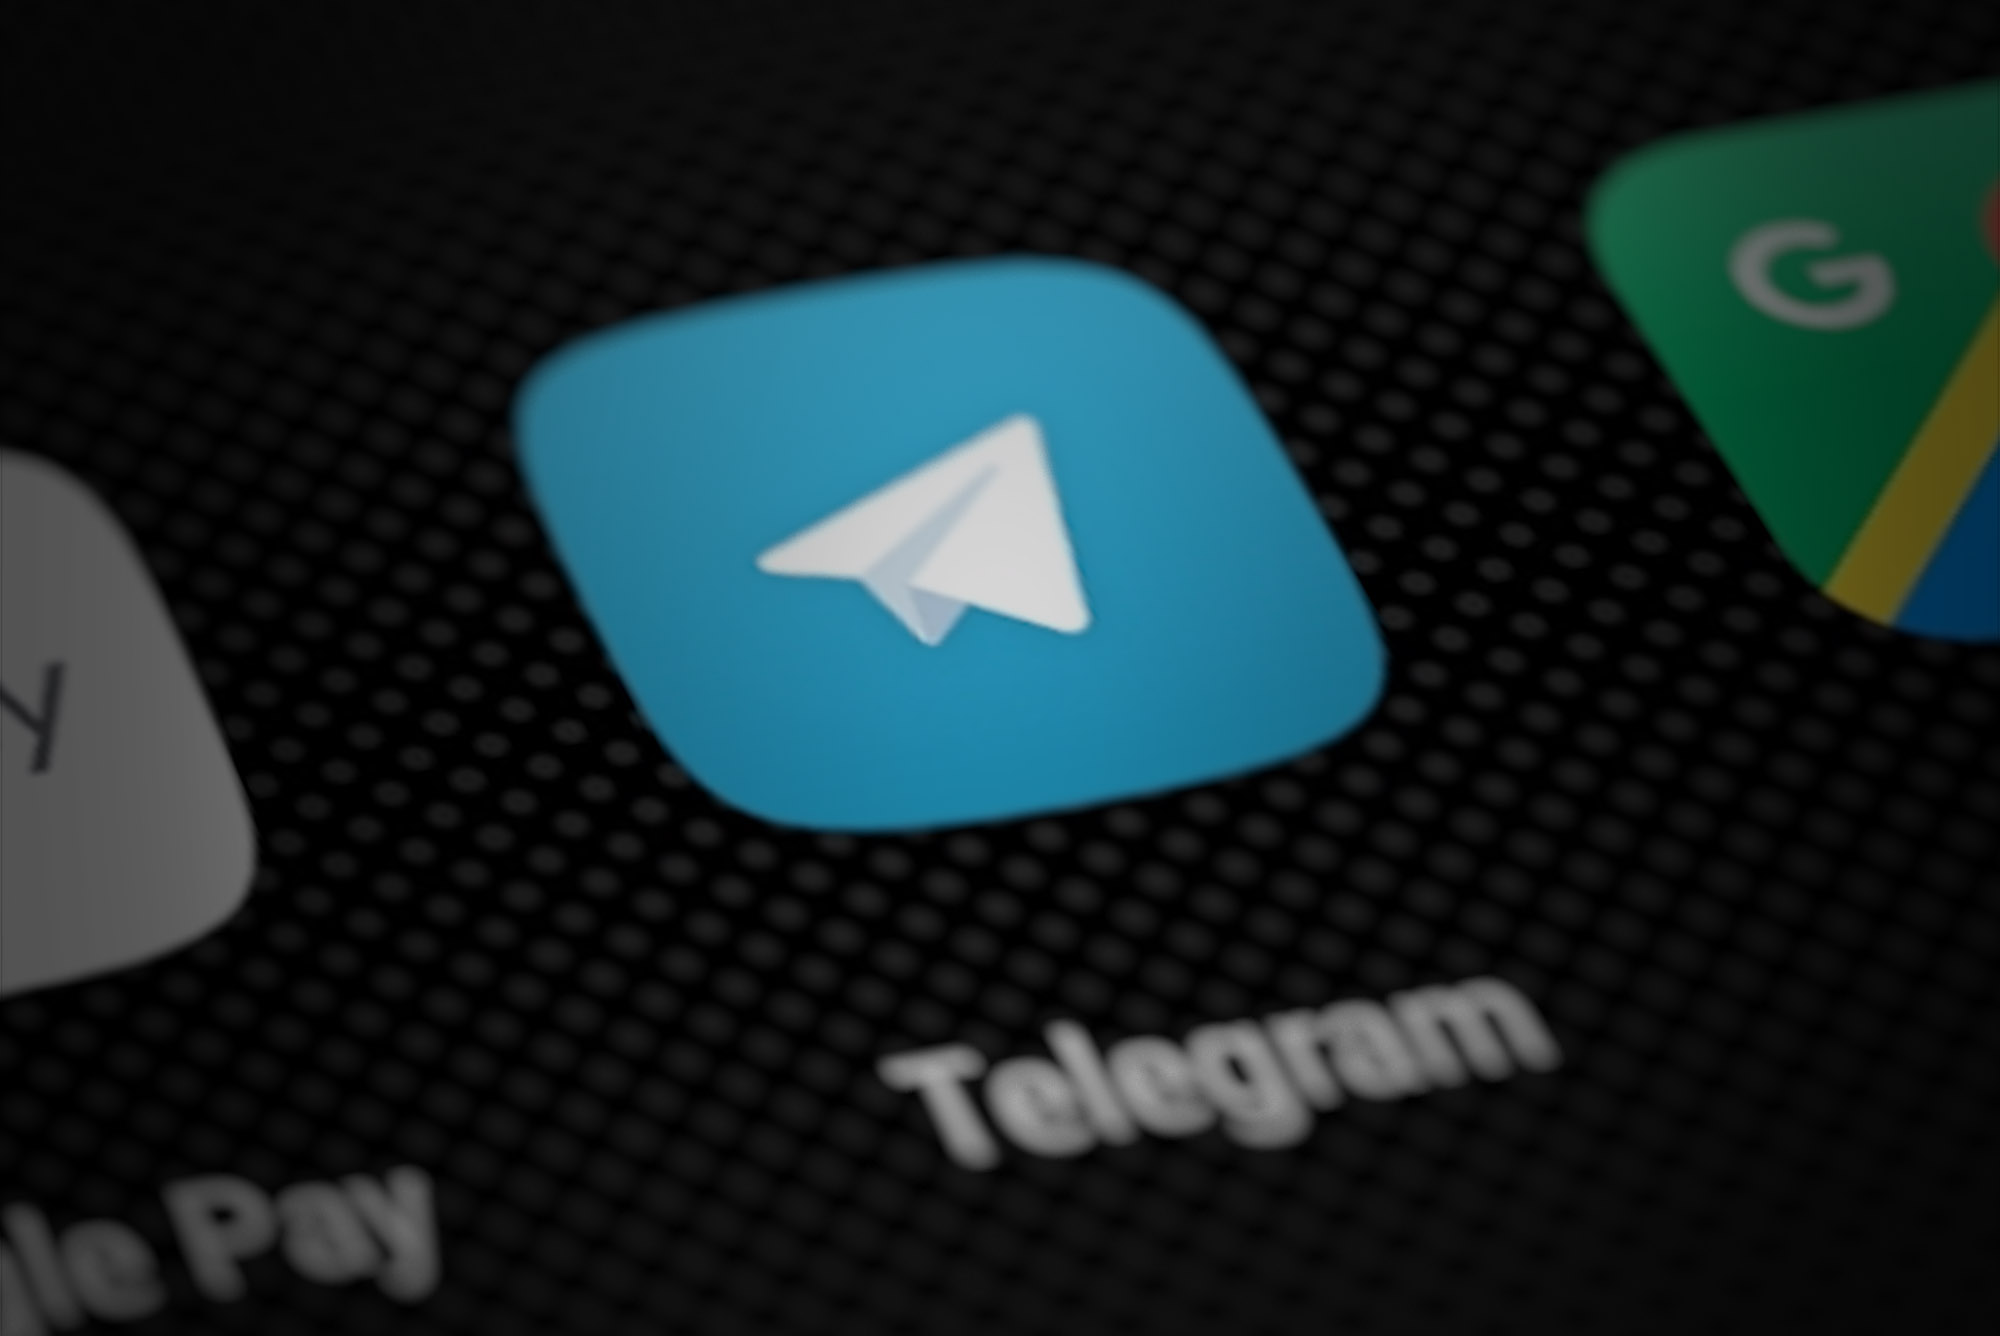 购买Telegram账号的需求日益增长